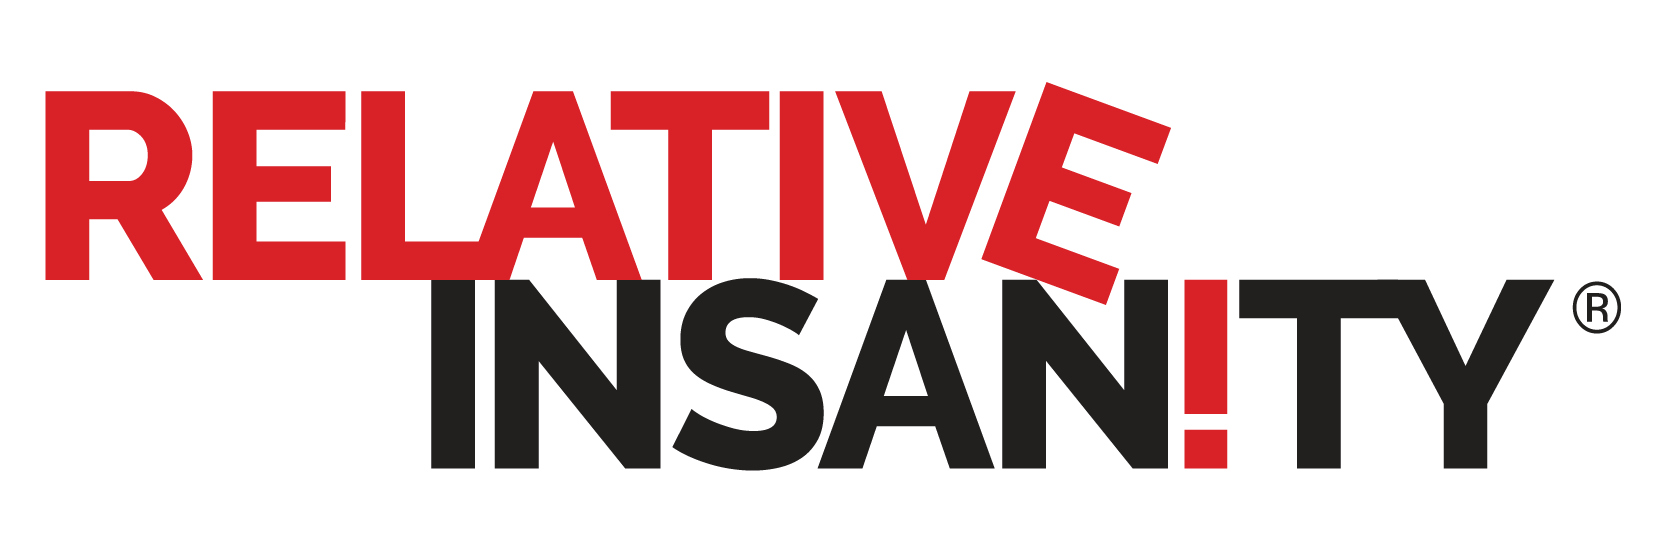 Relative Insanity logo